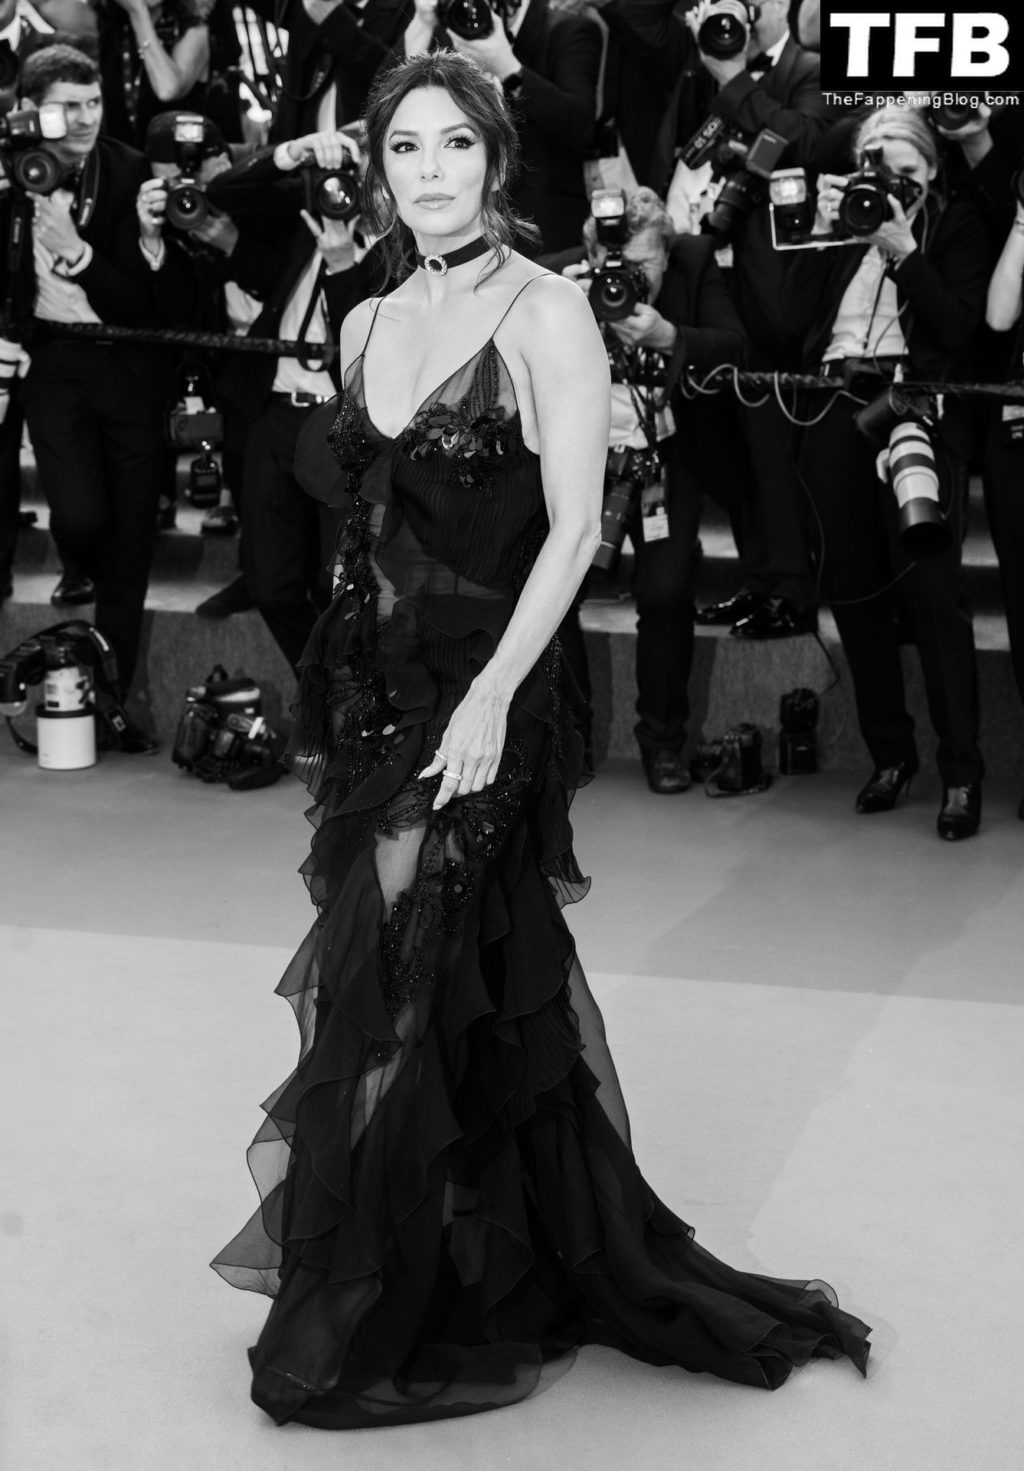 Eva Longoria Sexy The Fappening Blog 104 1024x1471 - Eva Longoria Looks Beautiful at the 75th Annual Cannes Film Festival (150 Photos)